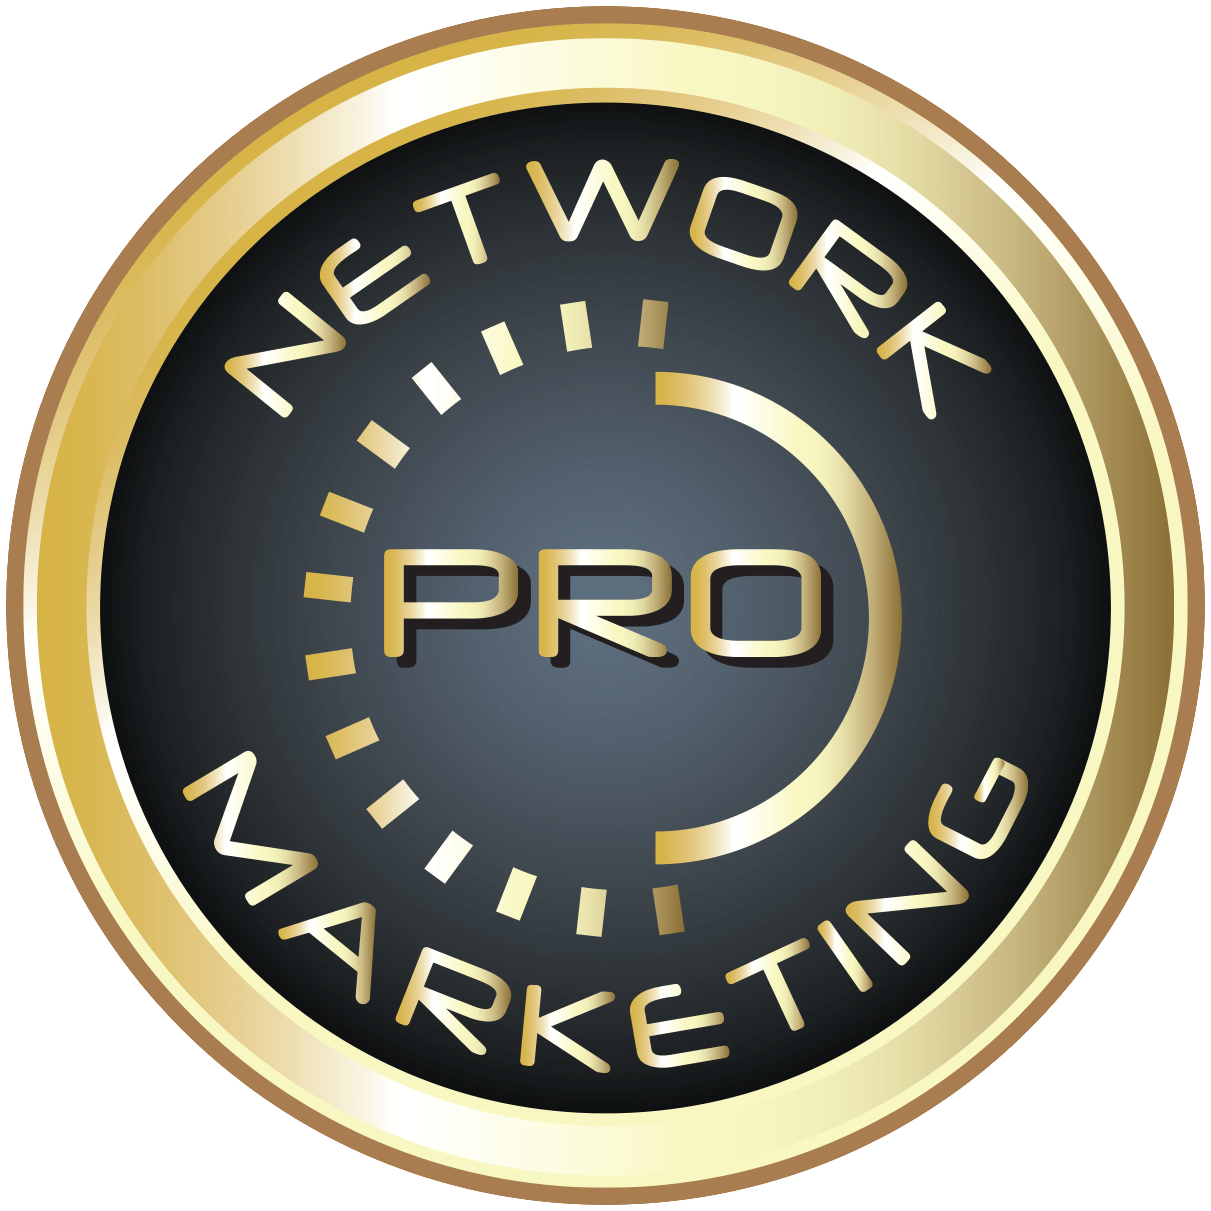 Image of Network Marketing Pro logo